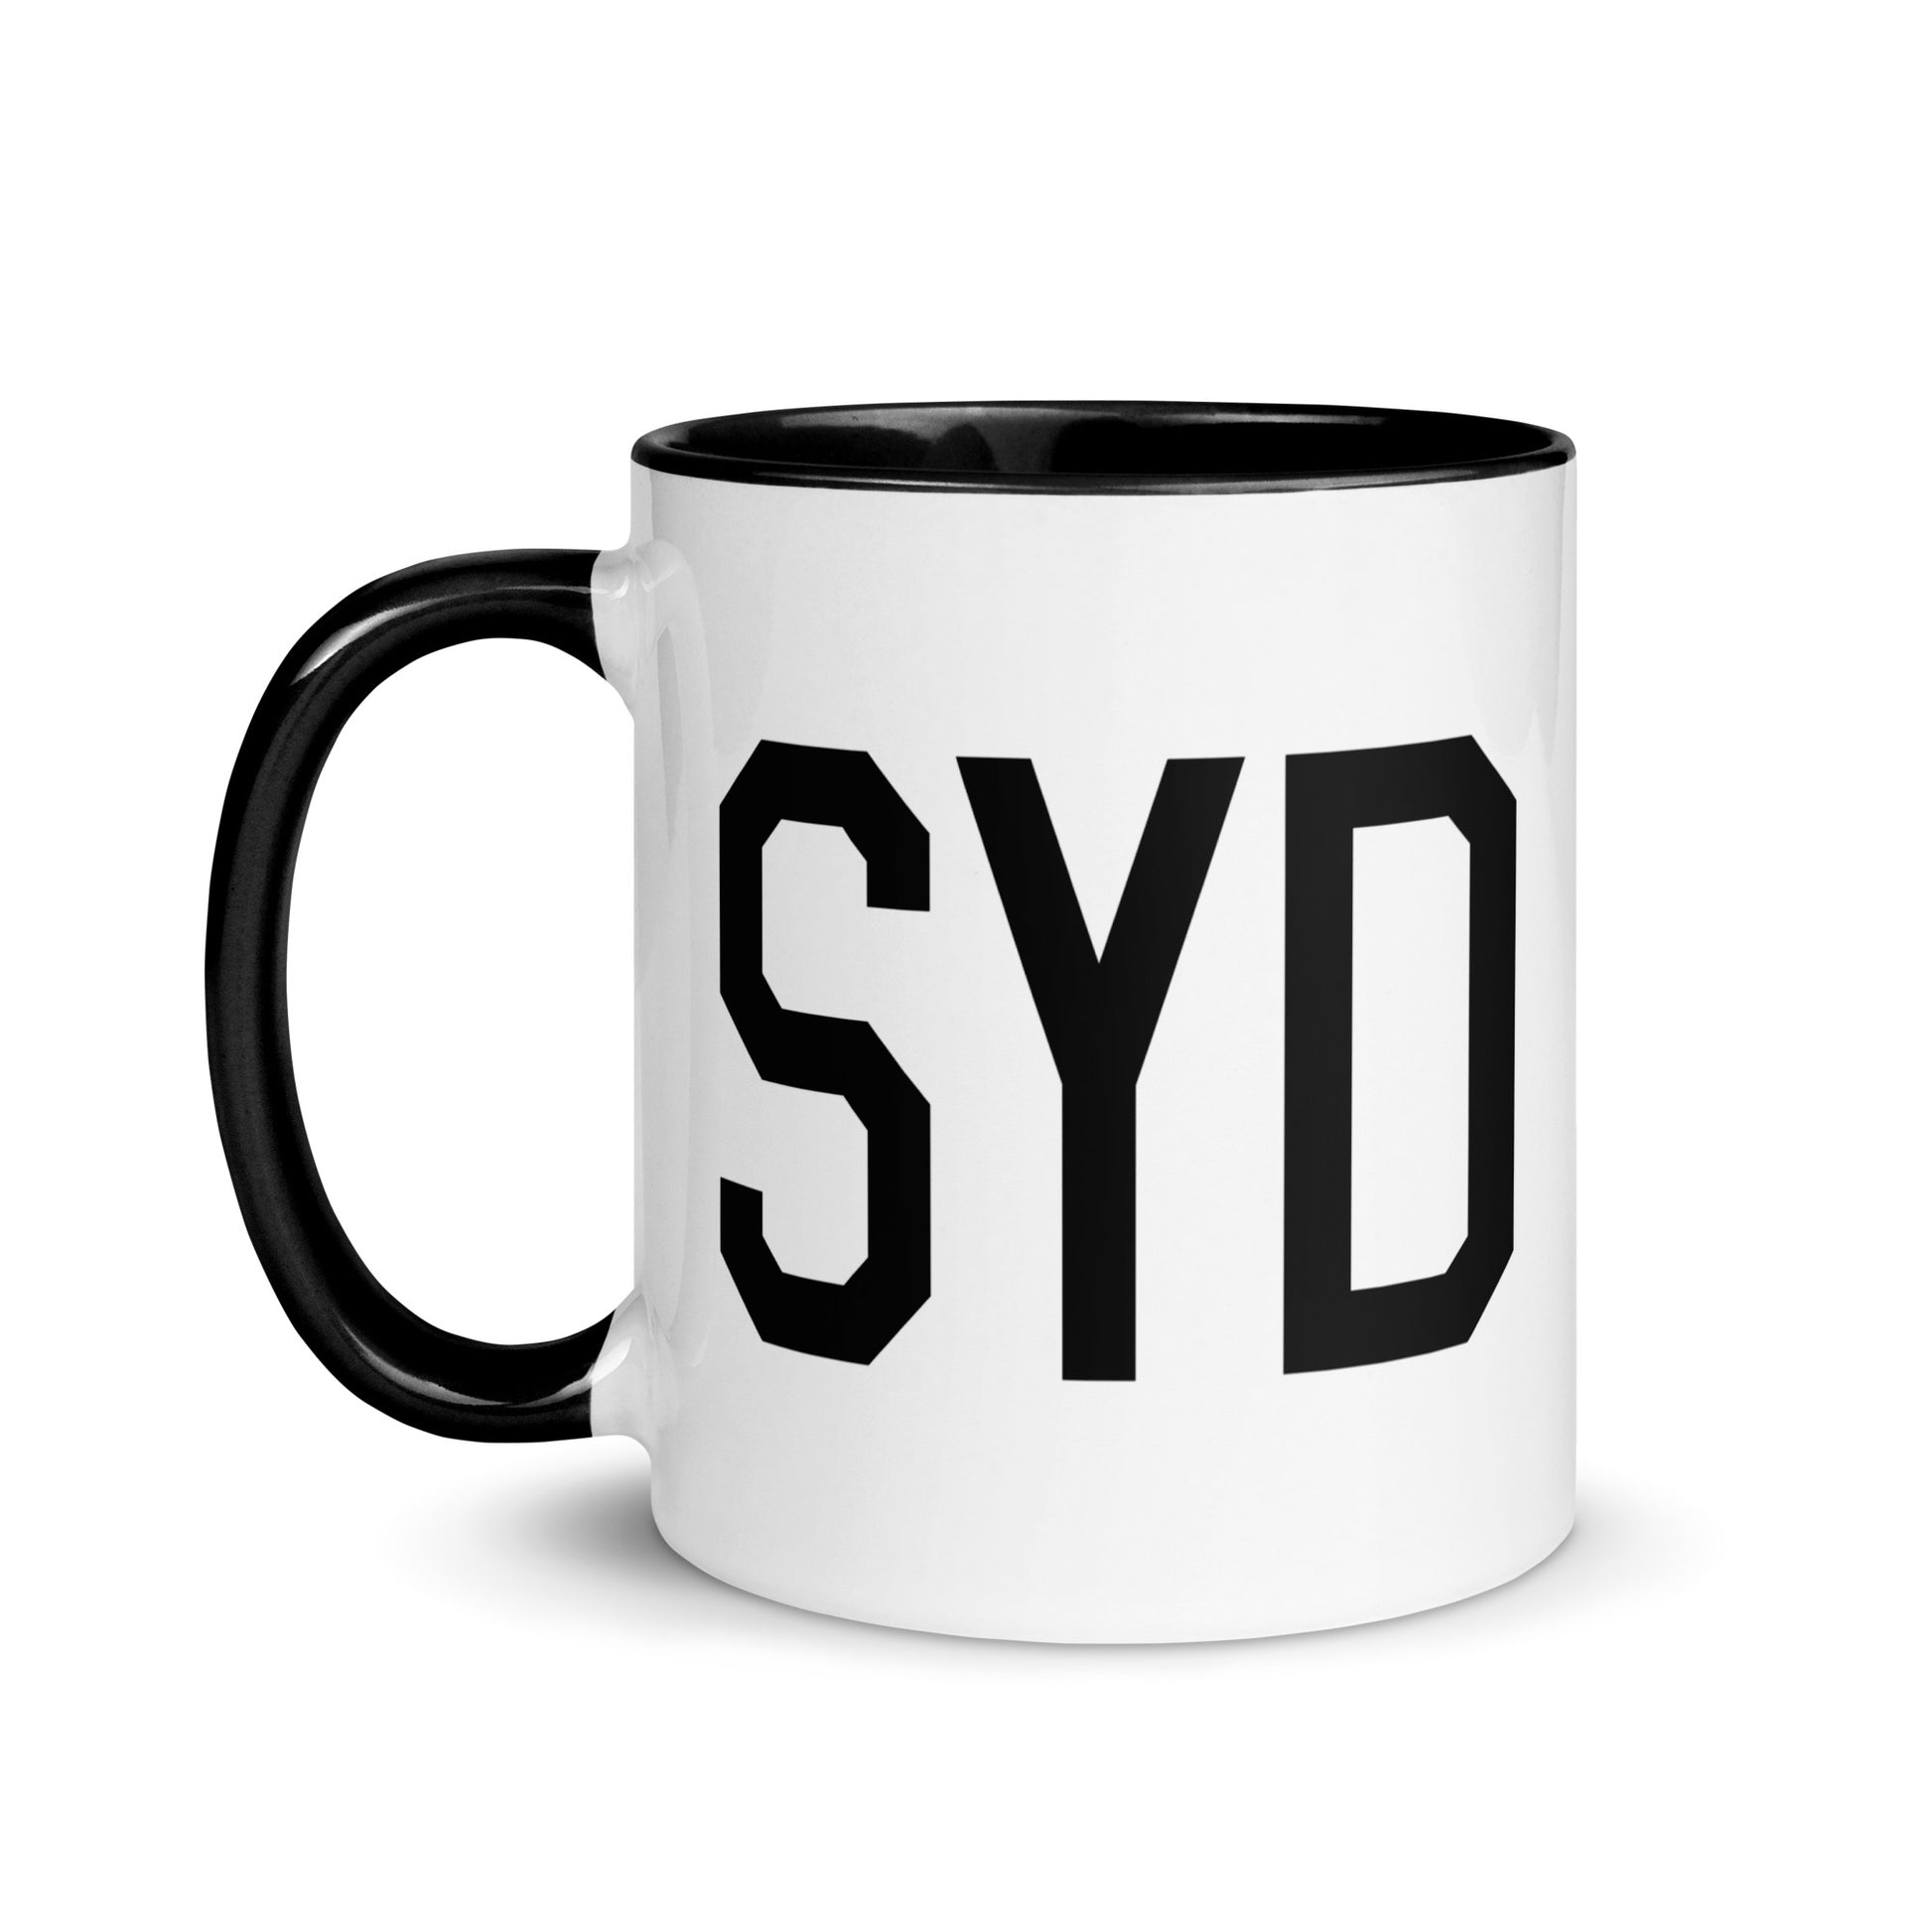 Aviation-Theme Coffee Mug - Black • SYD Sydney • YHM Designs - Image 03